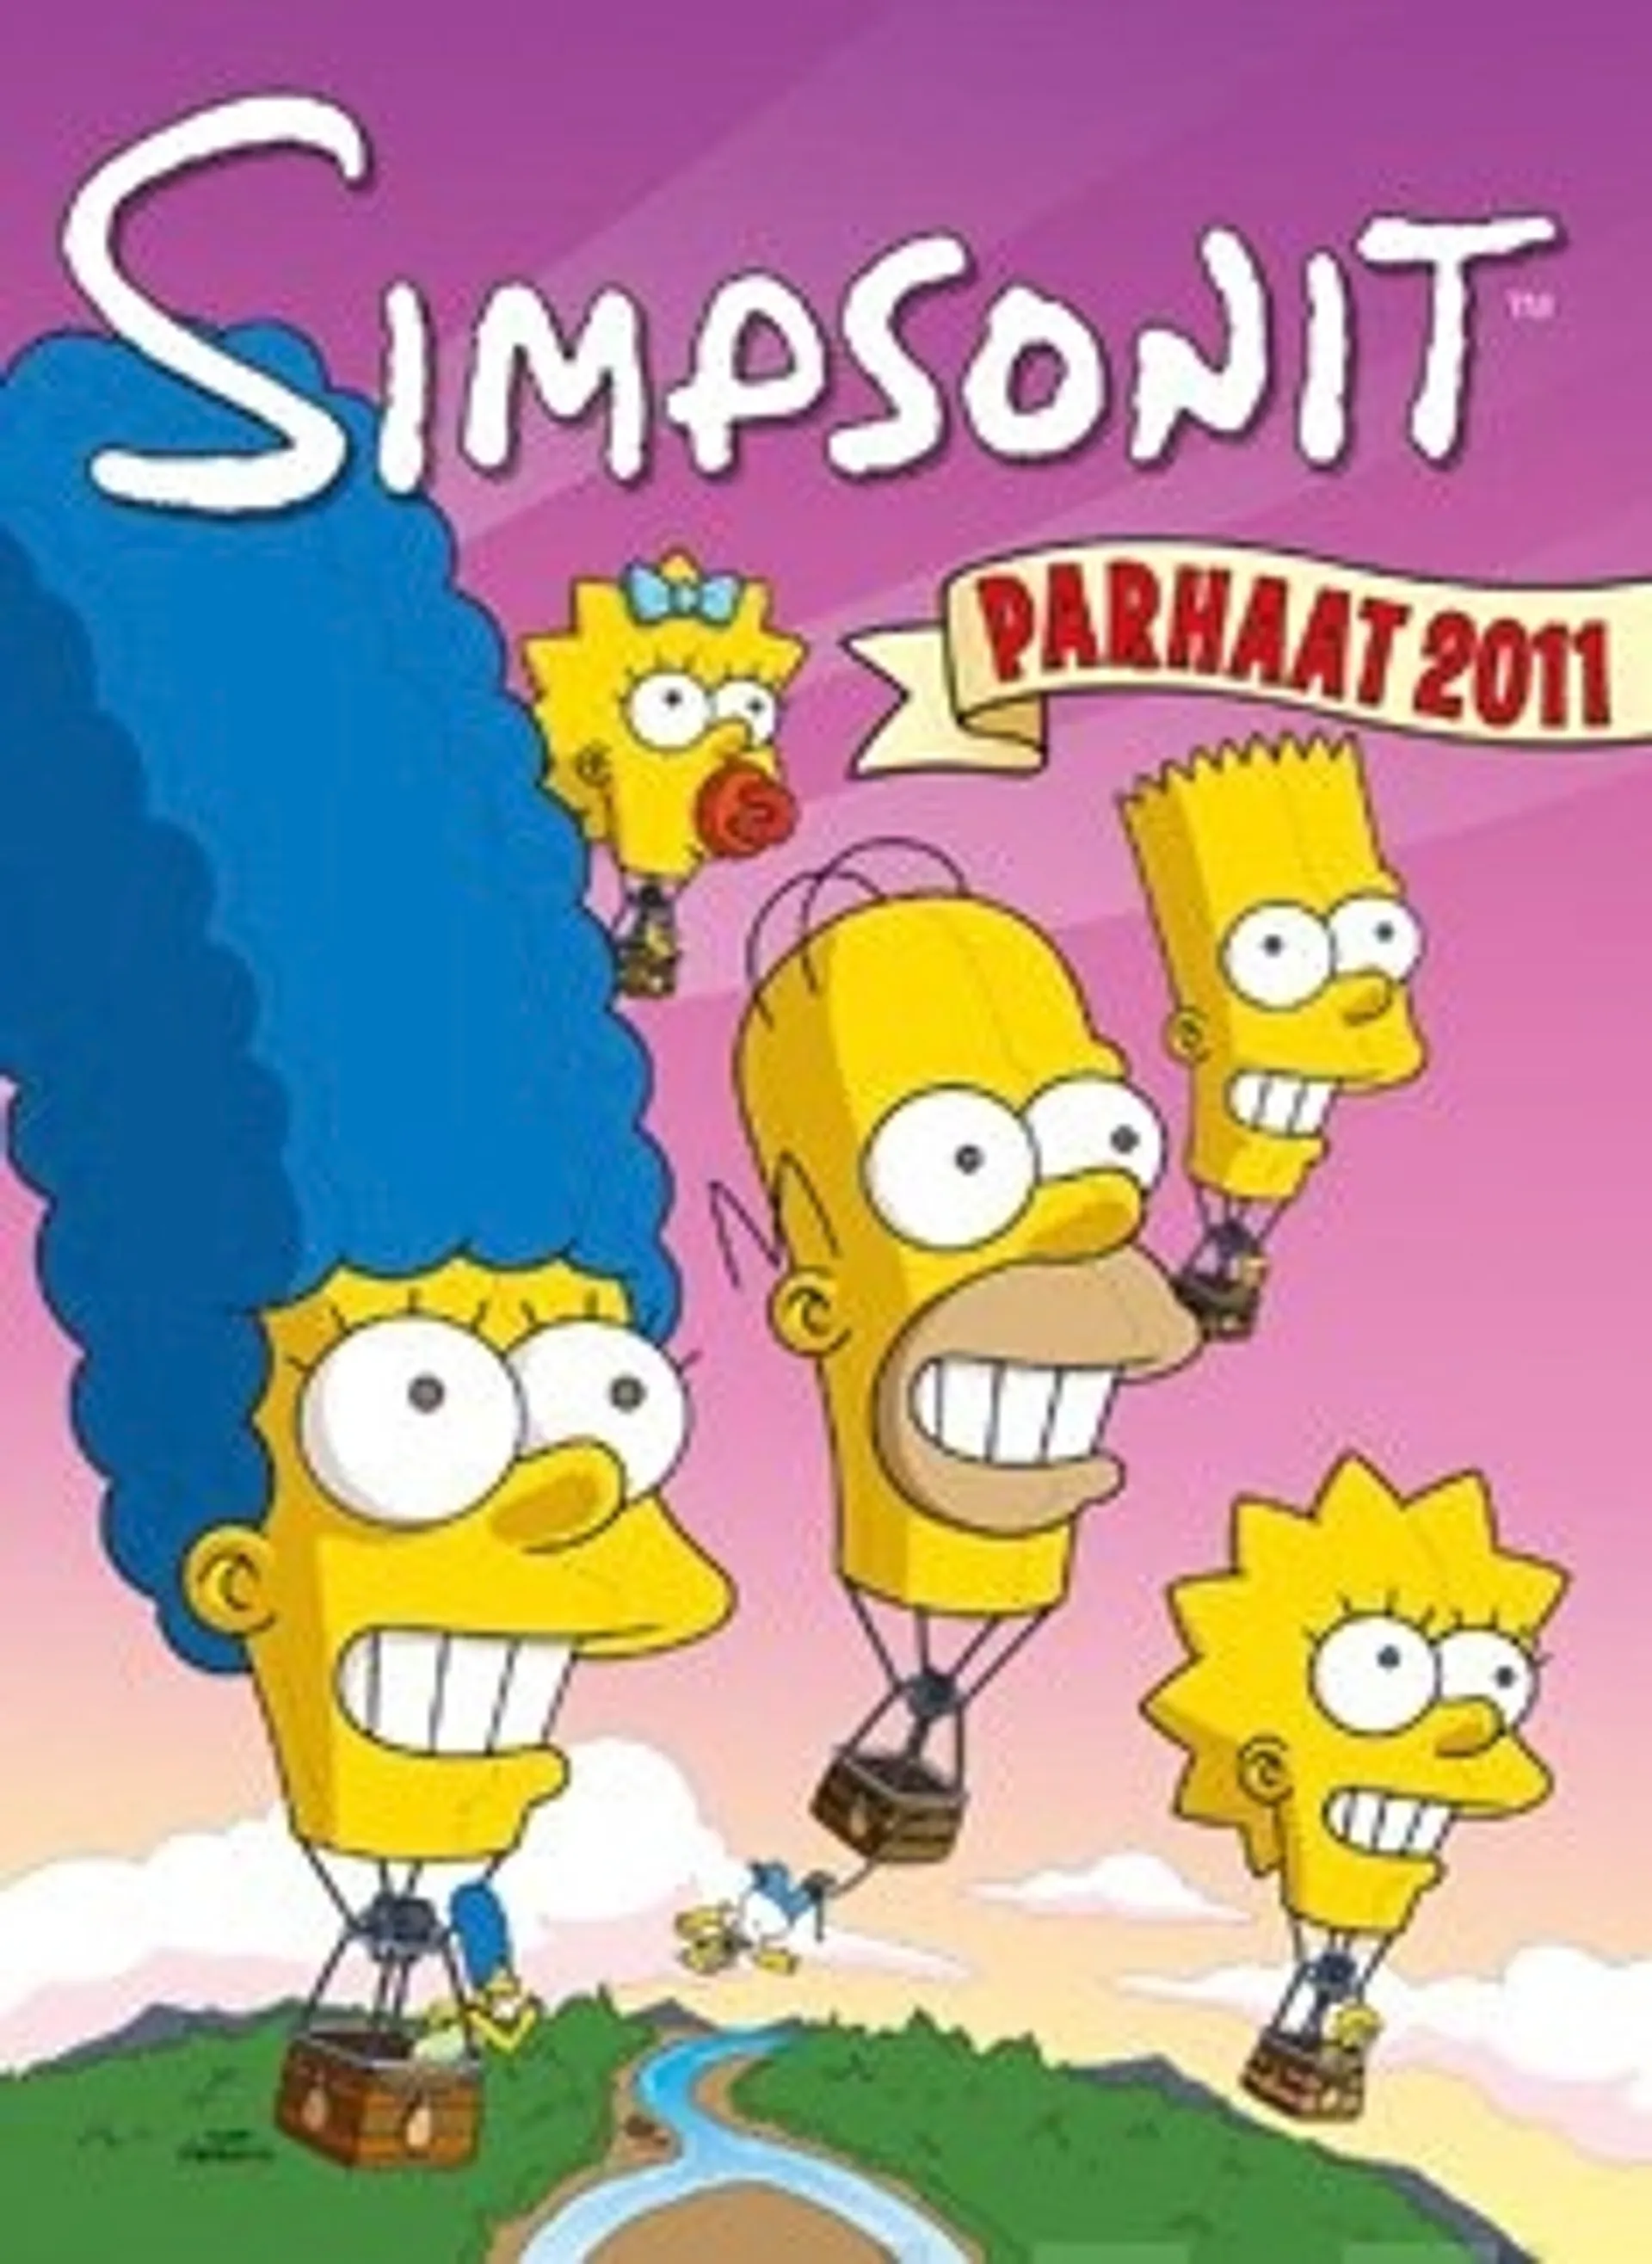 Simpsonit - Parhaat 2011